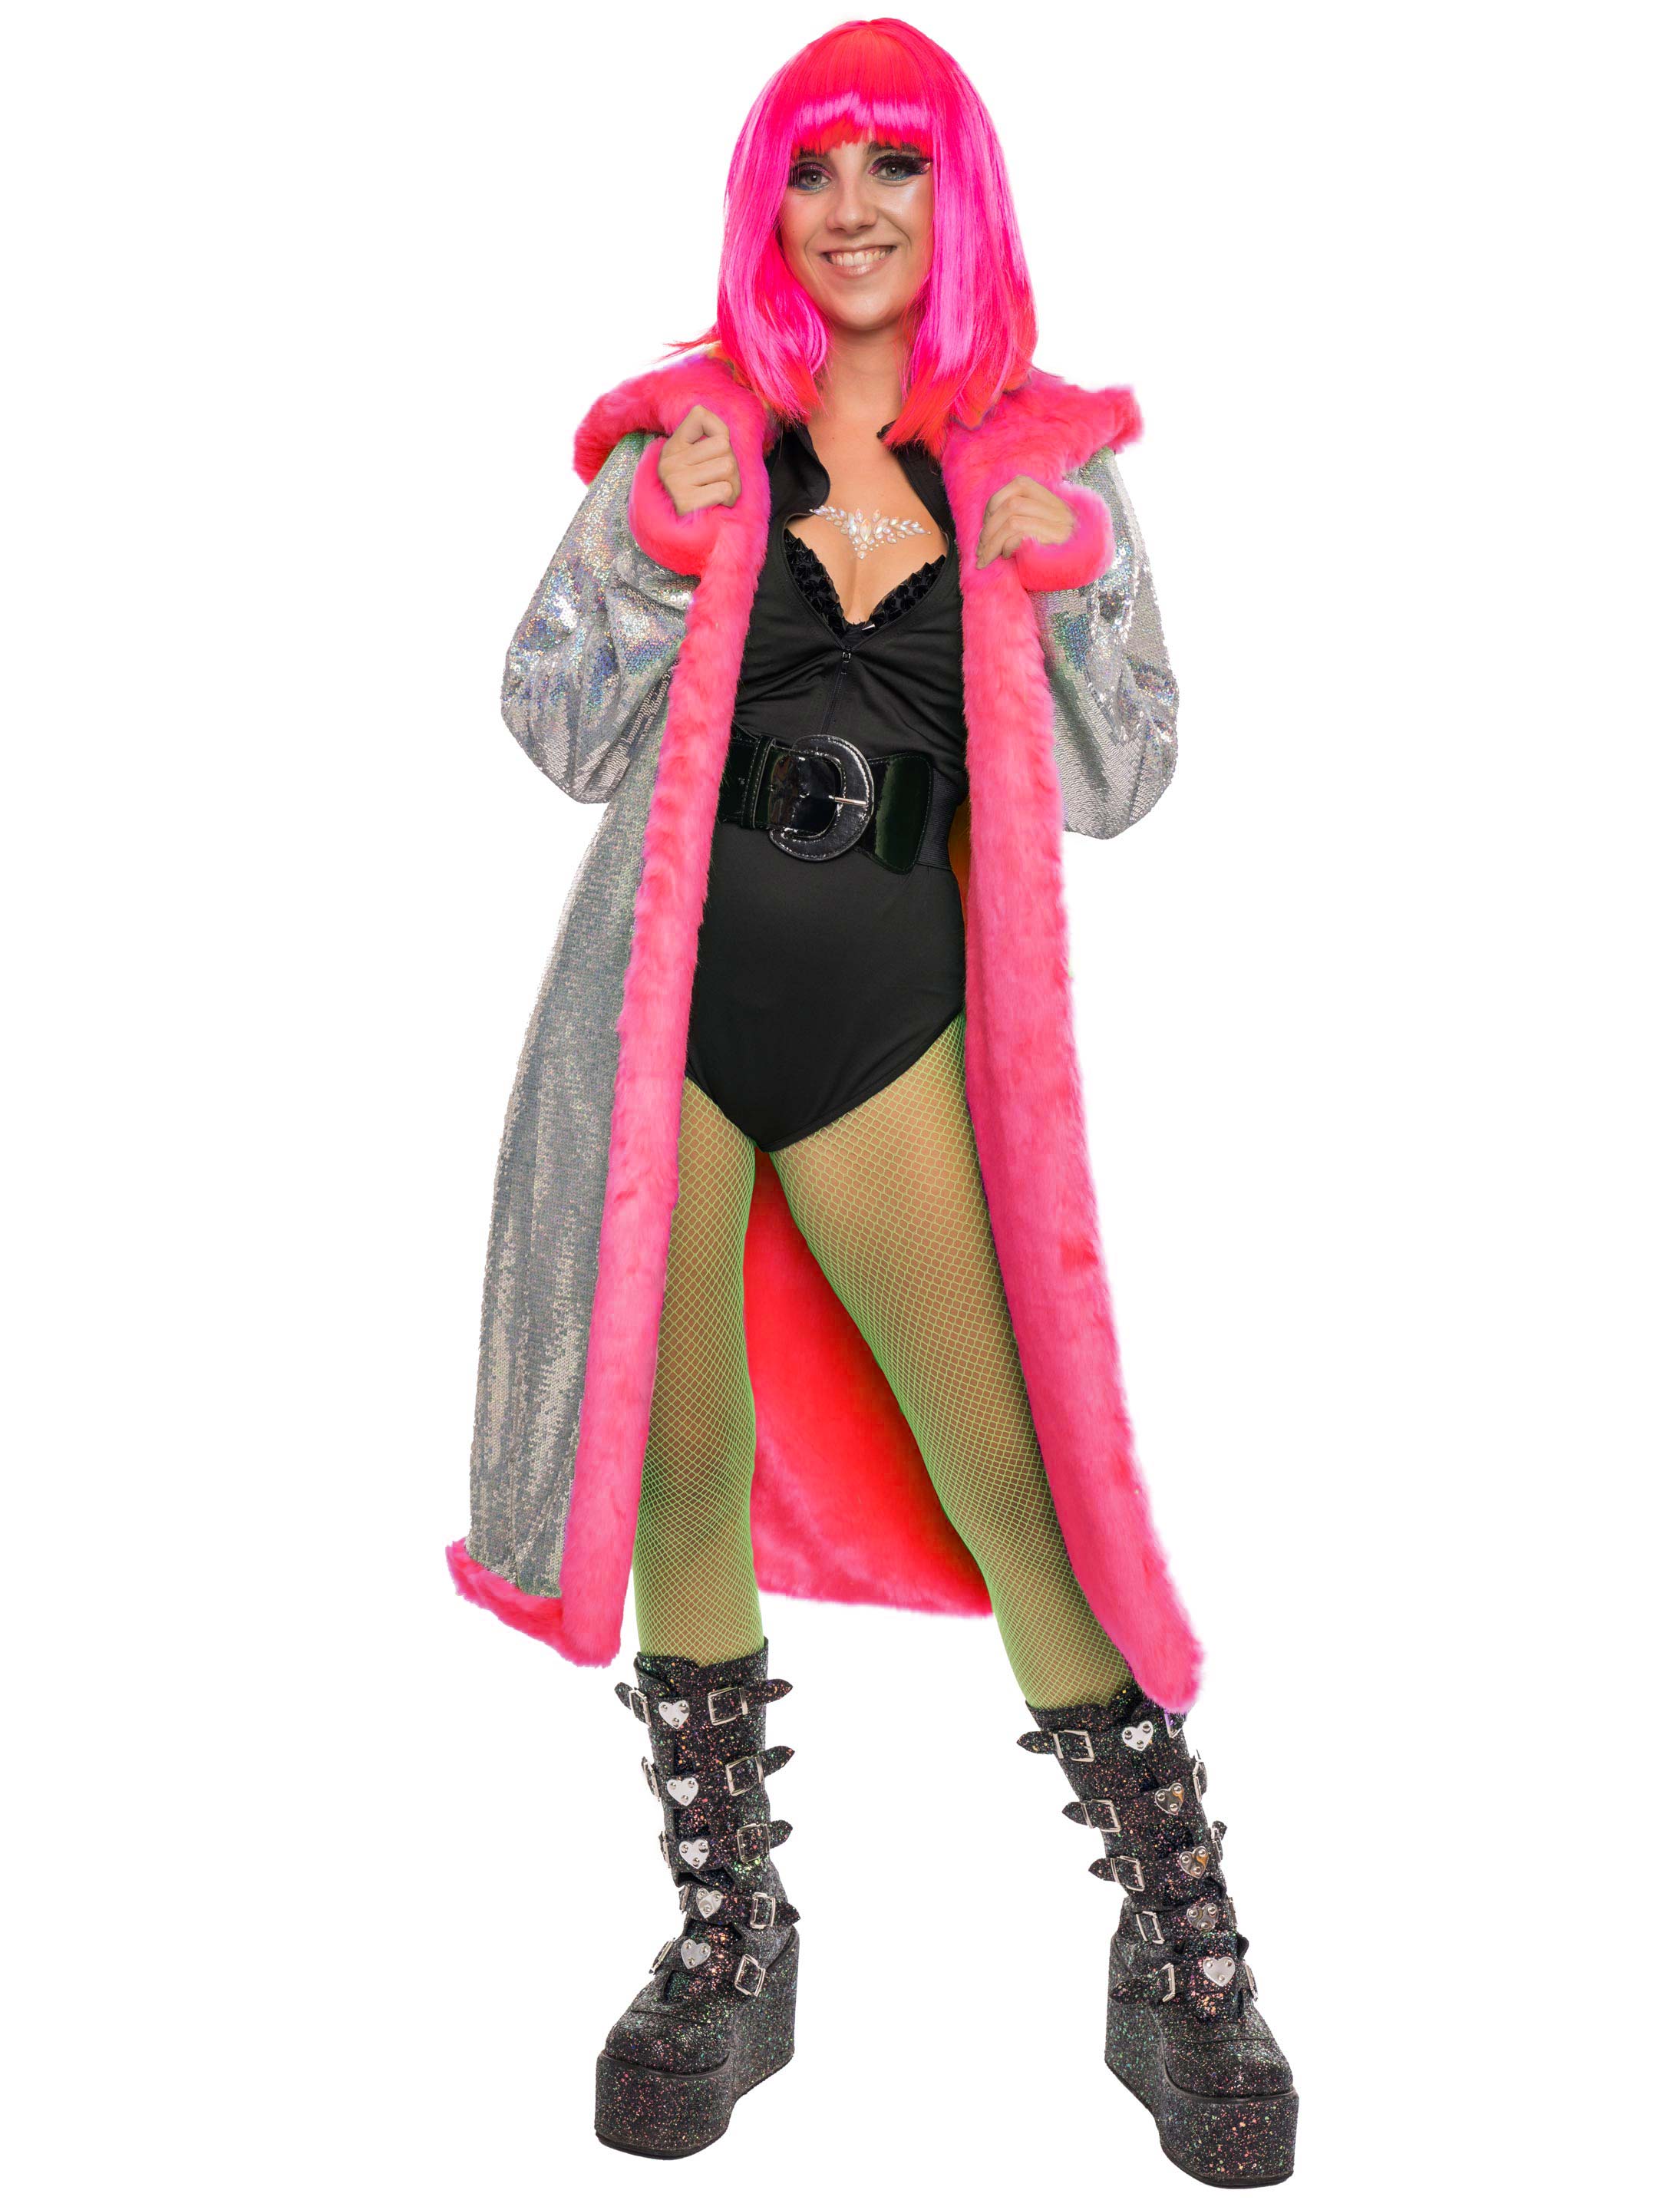 Mantel mit Kapuze und Pailletten pink L/XL